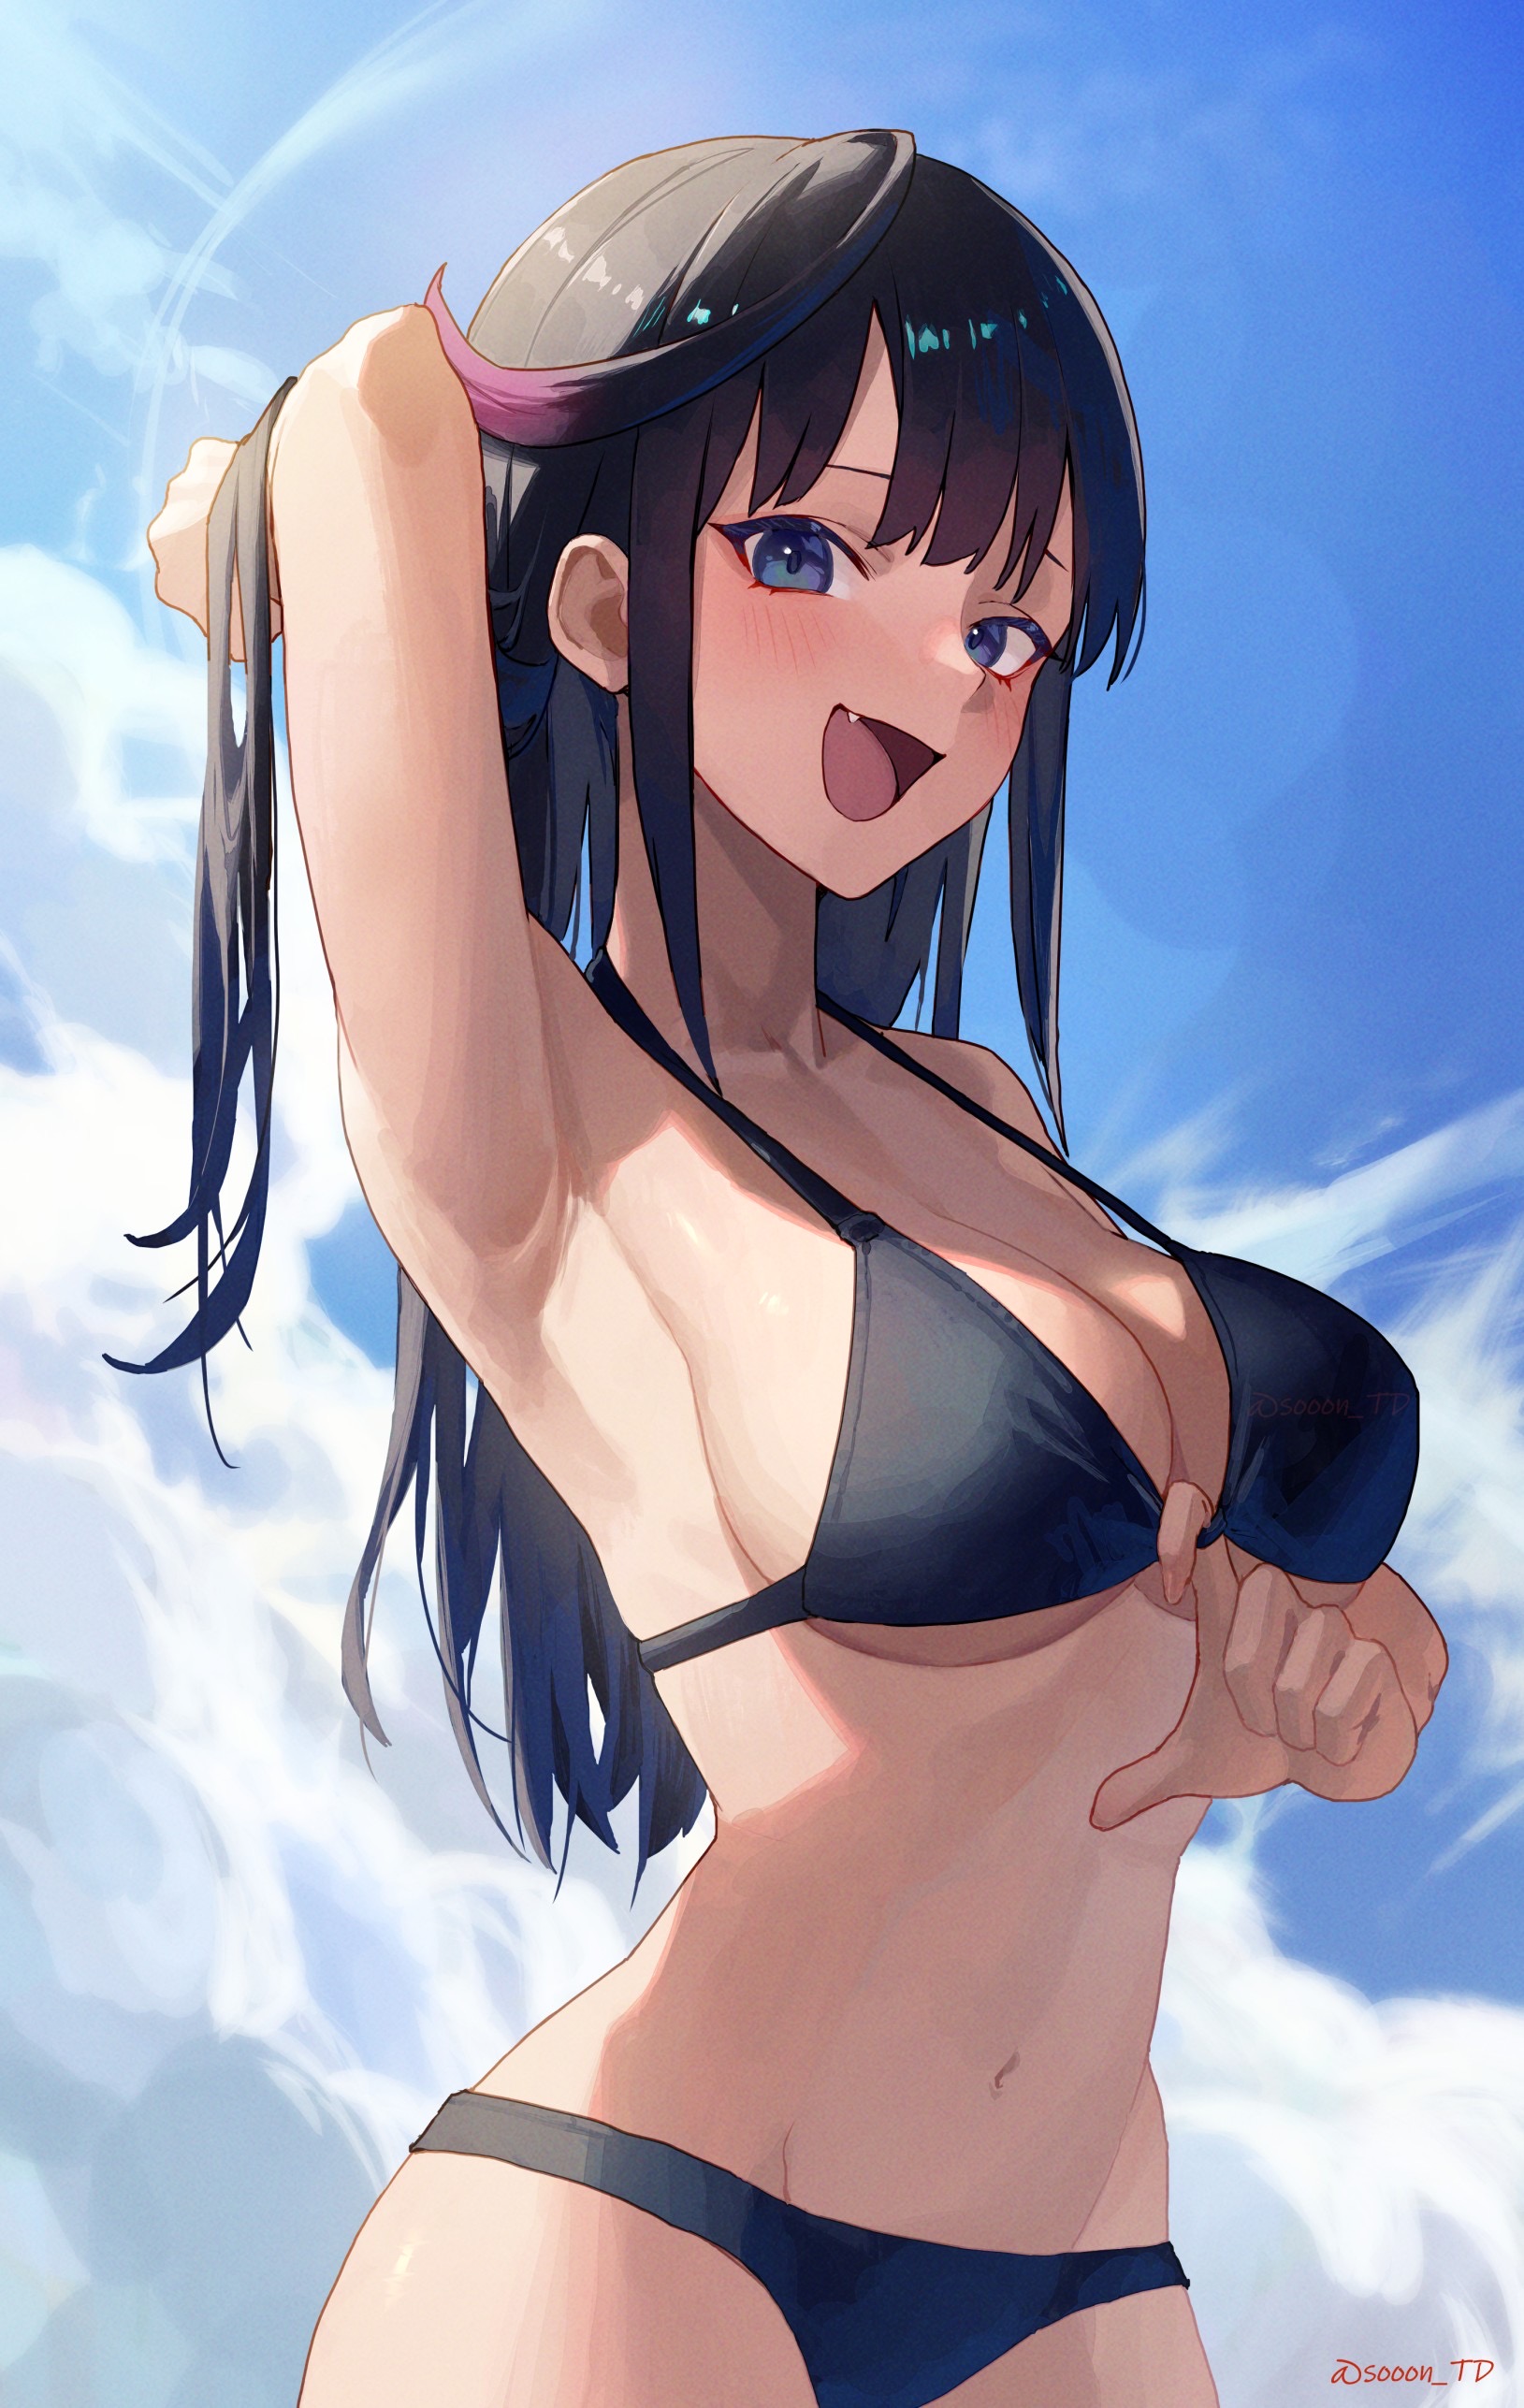 Anime girls in bikinis with big boo - OpenDream